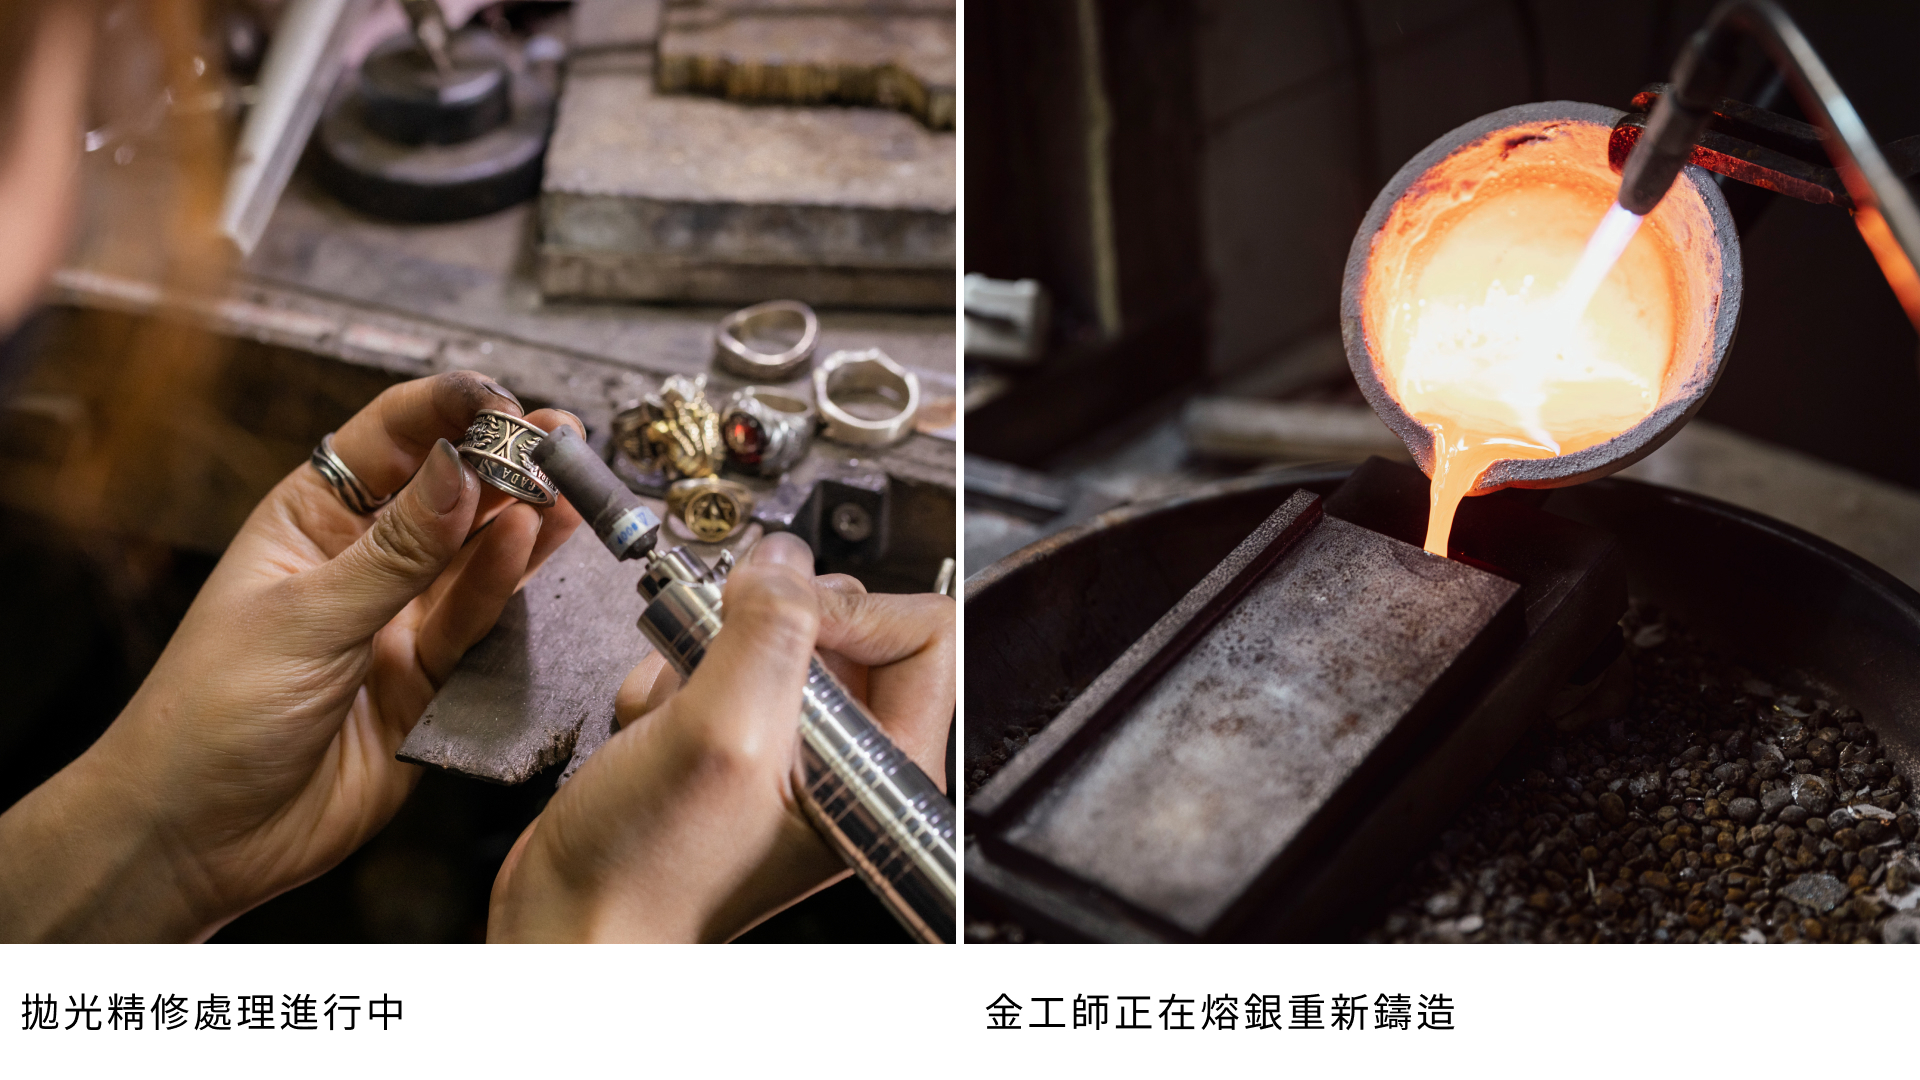 專業金工師正在對銀飾進行拋光精修處理，展示精細的工藝技術；金工師傅在工作室中熔銀重新鑄造，展示銀飾製作的高溫工藝過程